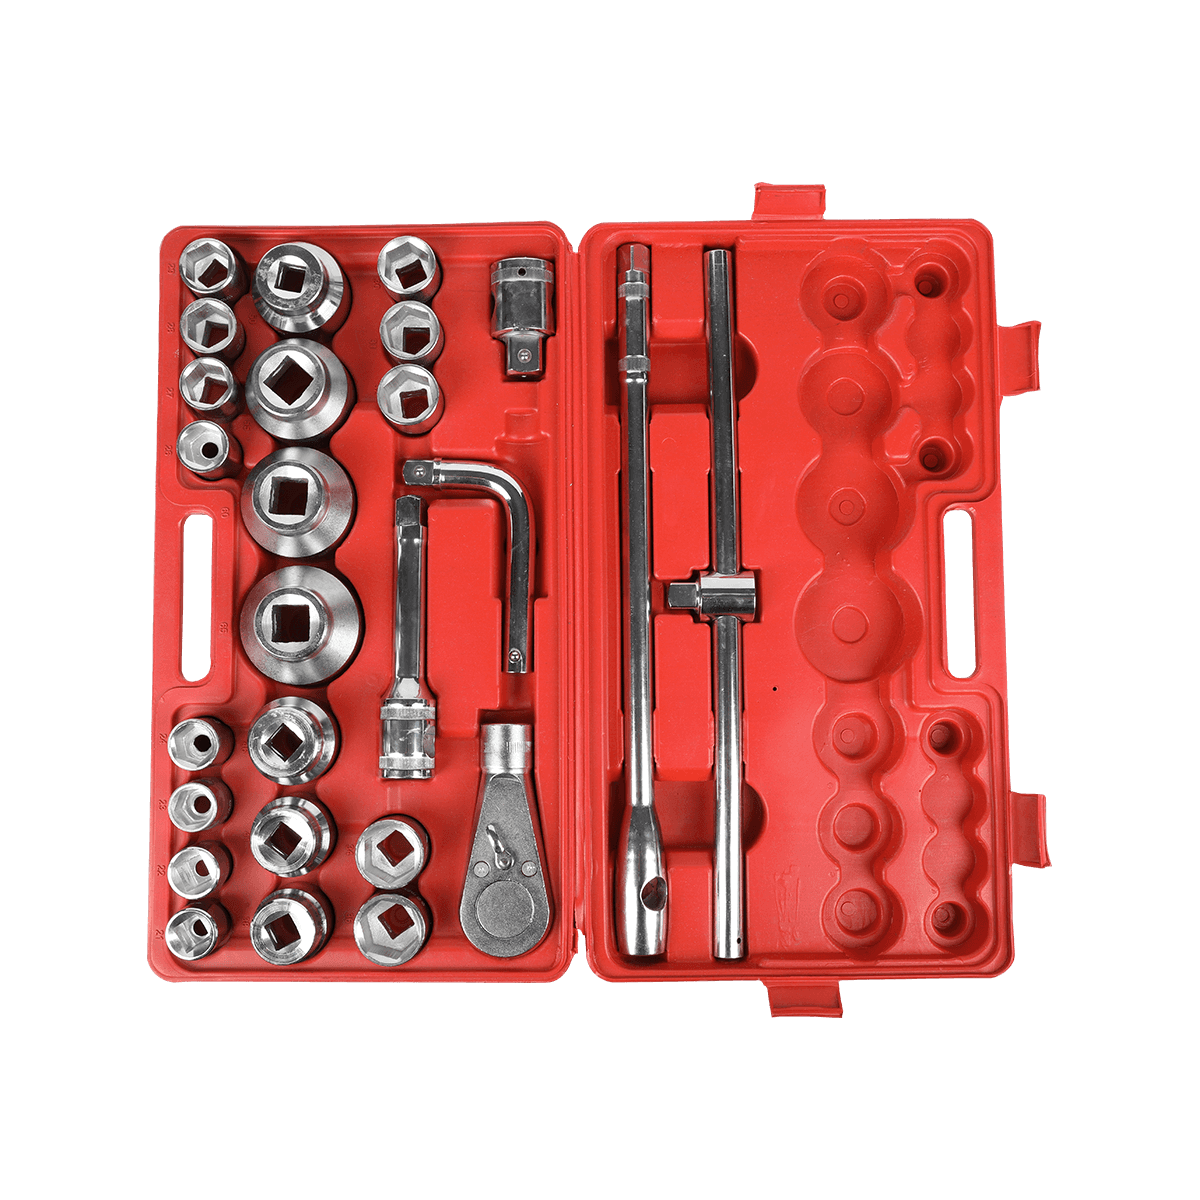 Conjunto de ferramentas mecânicas com soquete Cr-Mo de 26 peças de 3/4' Kits combinados de chave de impacto Conjunto de ferramentas para serviços pesados